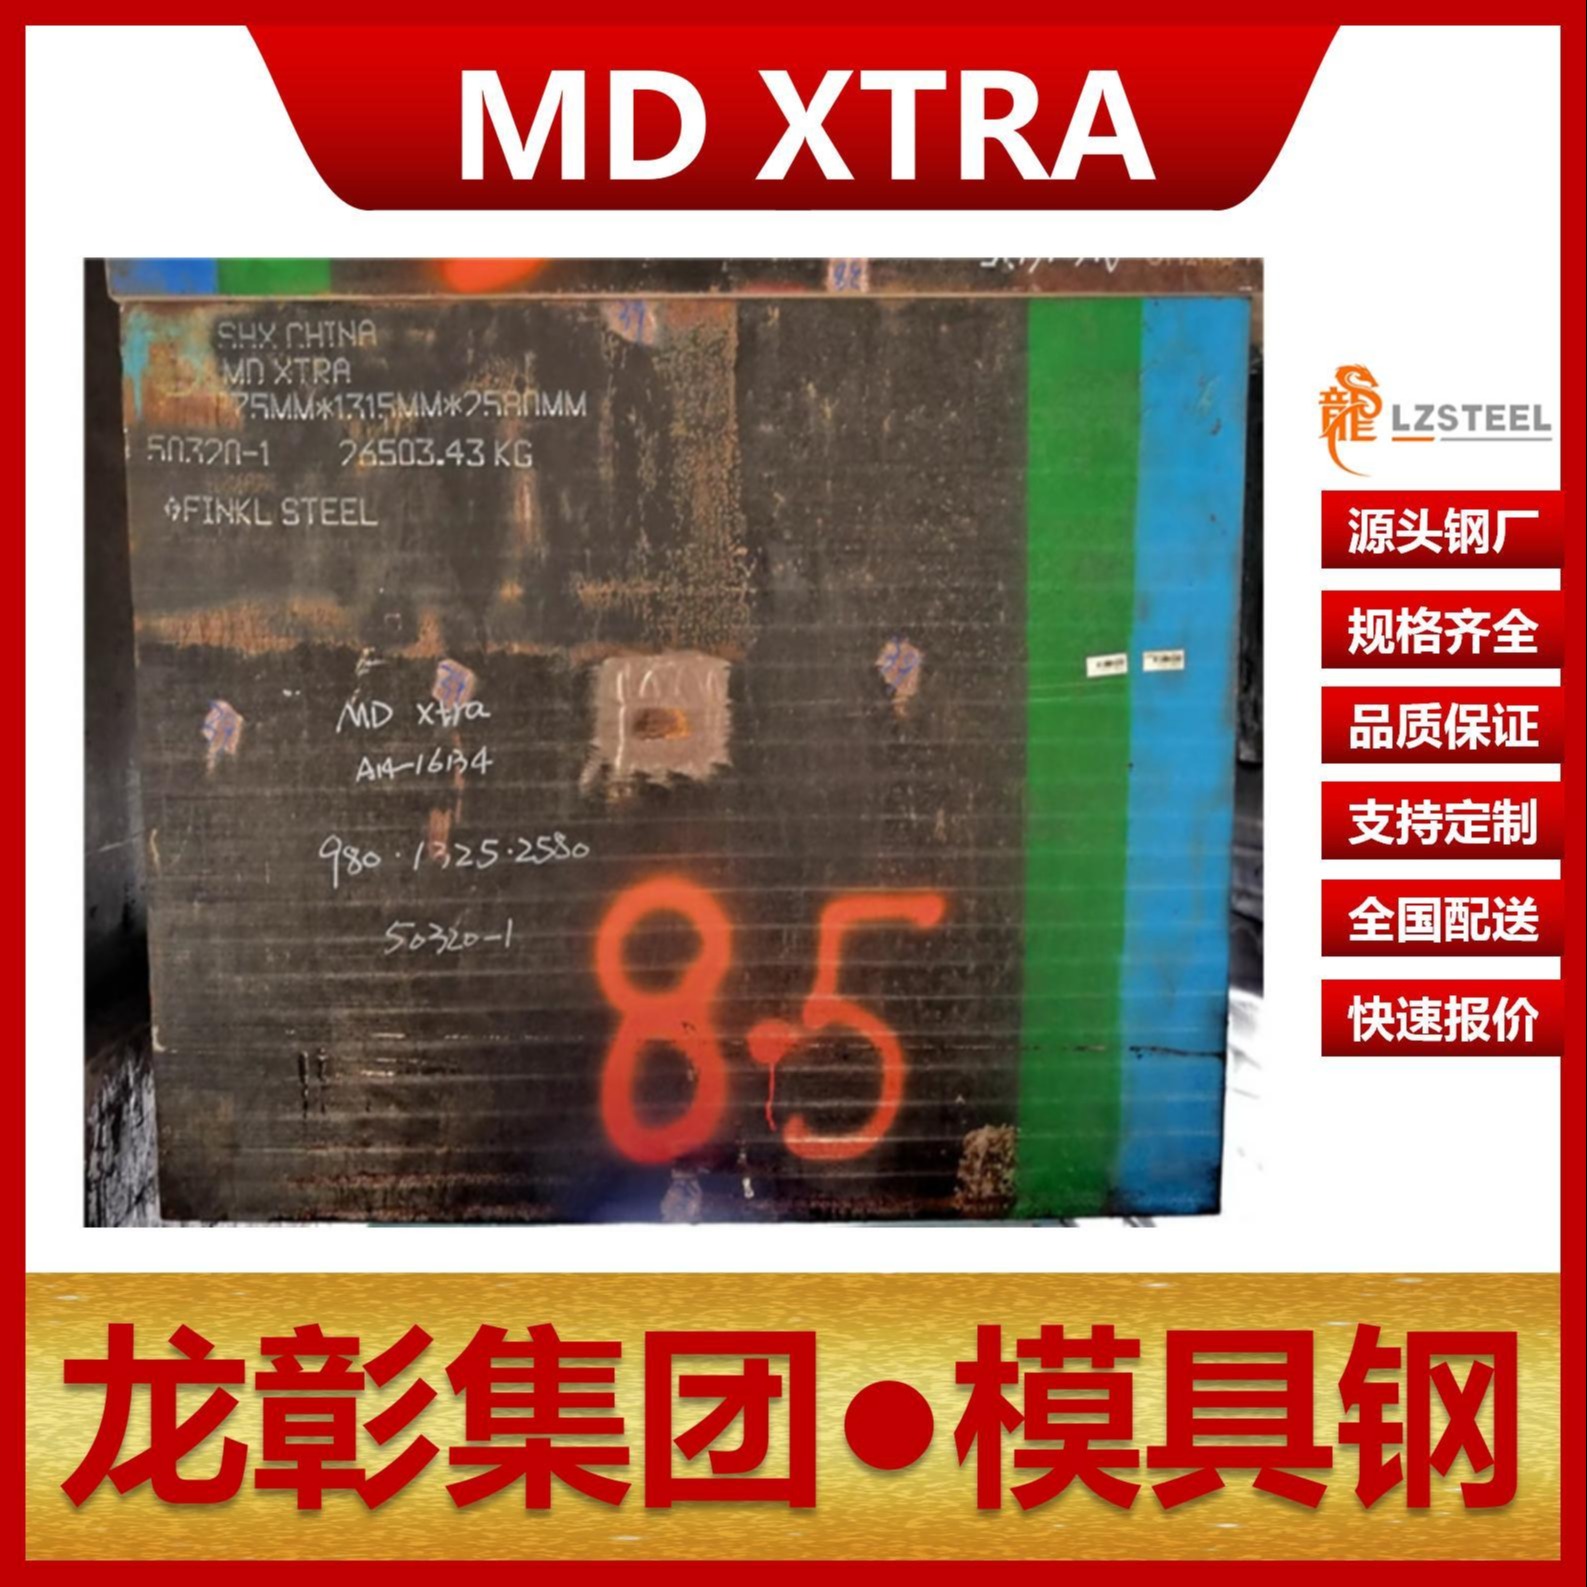 芬可乐MD XTRA模具钢现货批零 进口MD XTRA扁钢圆棒模具钢龙彰集团图片